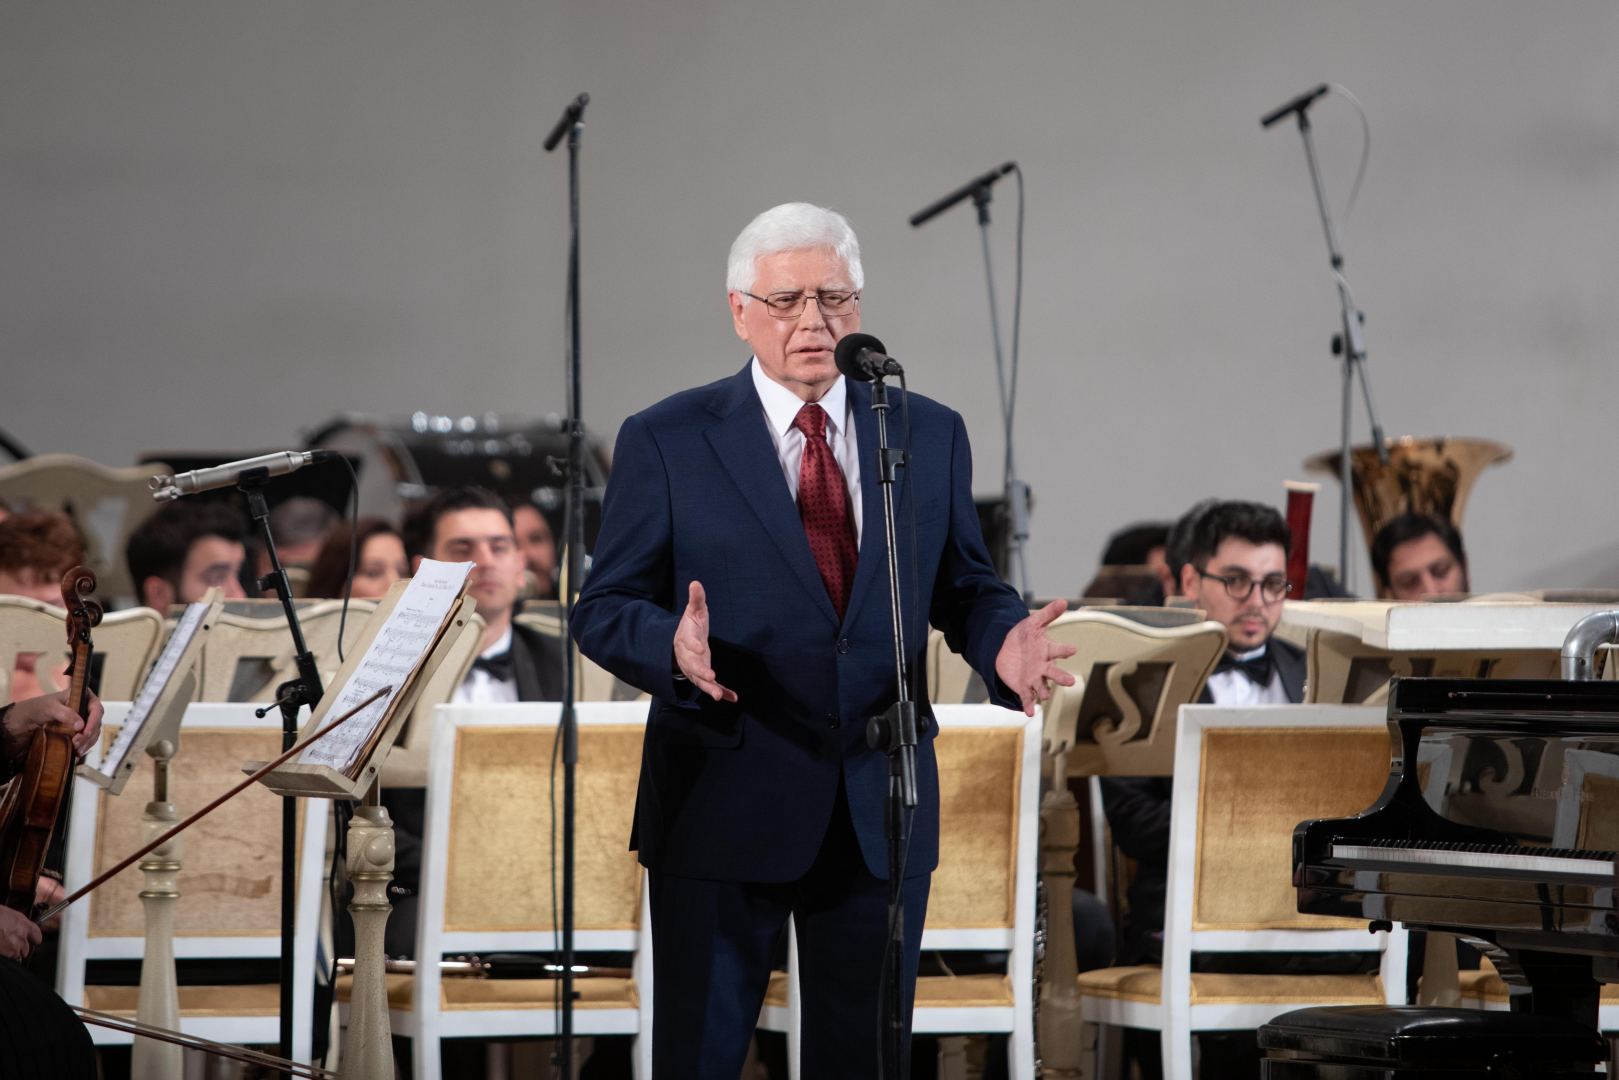 В Баку представлены выставка и концерт, посвященные 150-летию Сергея Рахманинова (ФОТО)